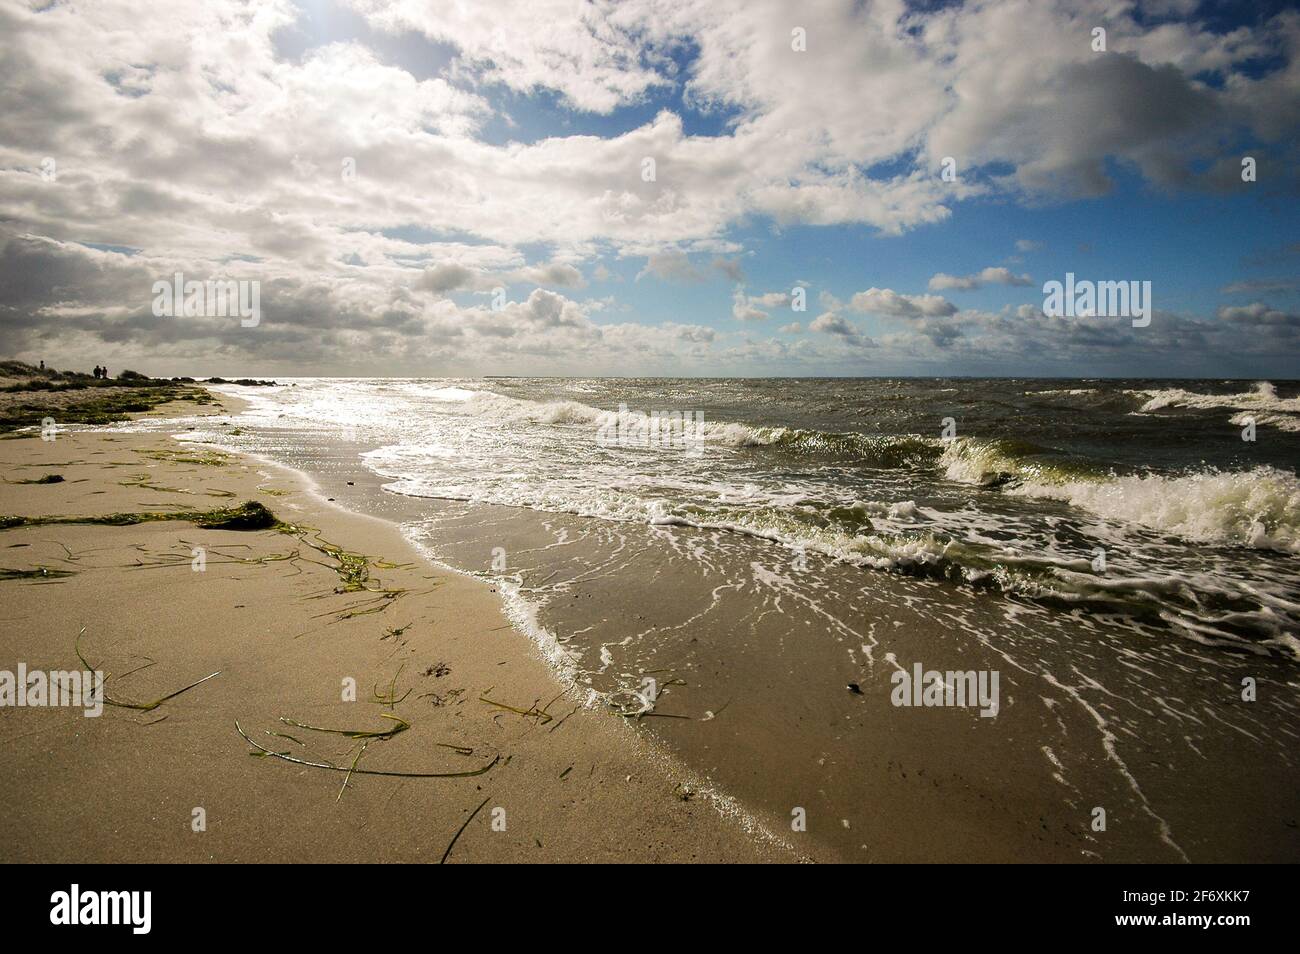 Sand, Wind und Wellen: außerhalb der Hauptsaison im Sommer ist der Strand oft menschenleer - sand, wind and waves: empty beach at off-season Stock Photo